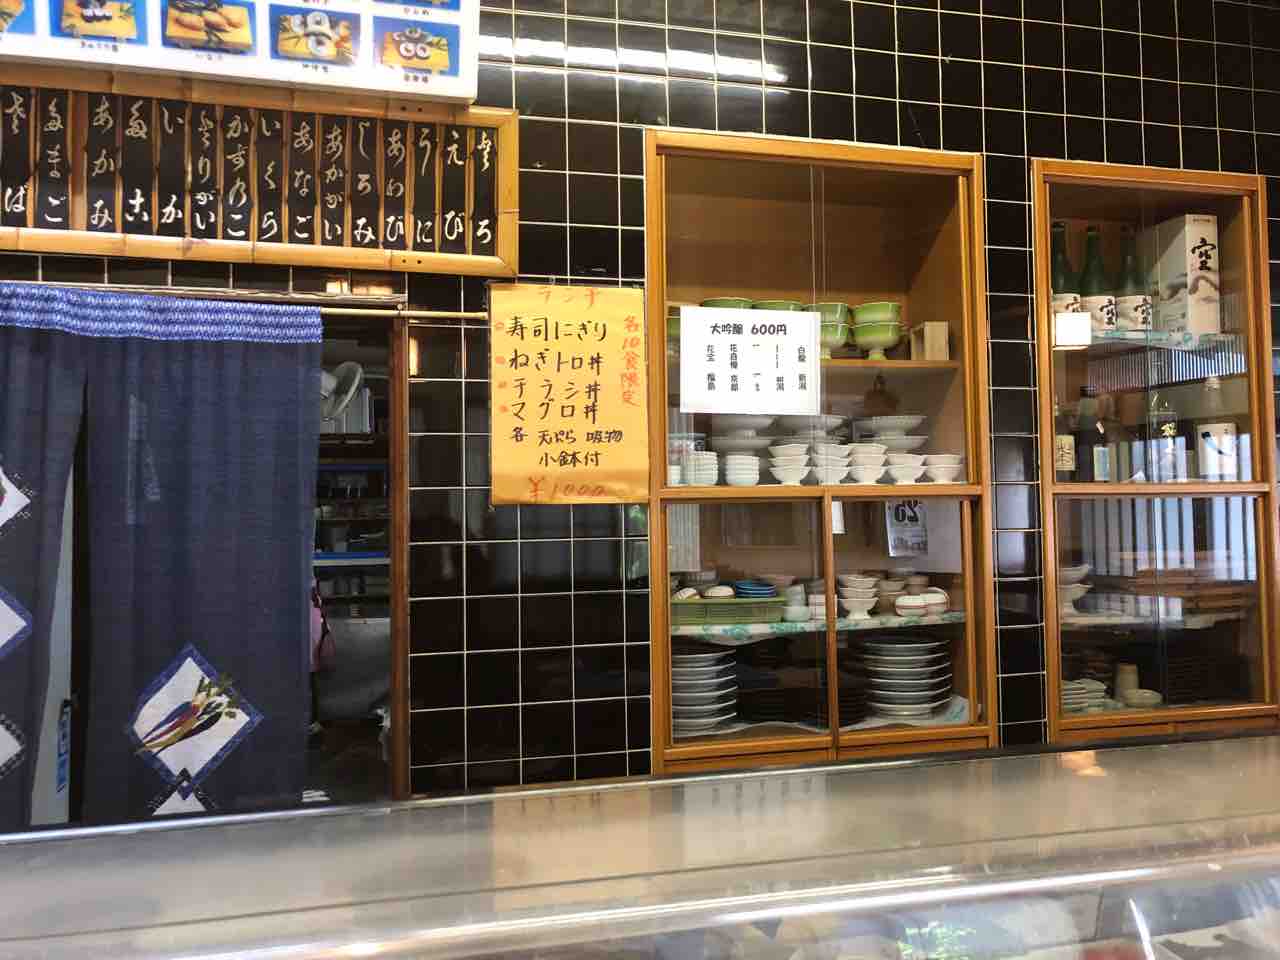 『御料理・仕出し・寿司 増屋』店舗カウンター